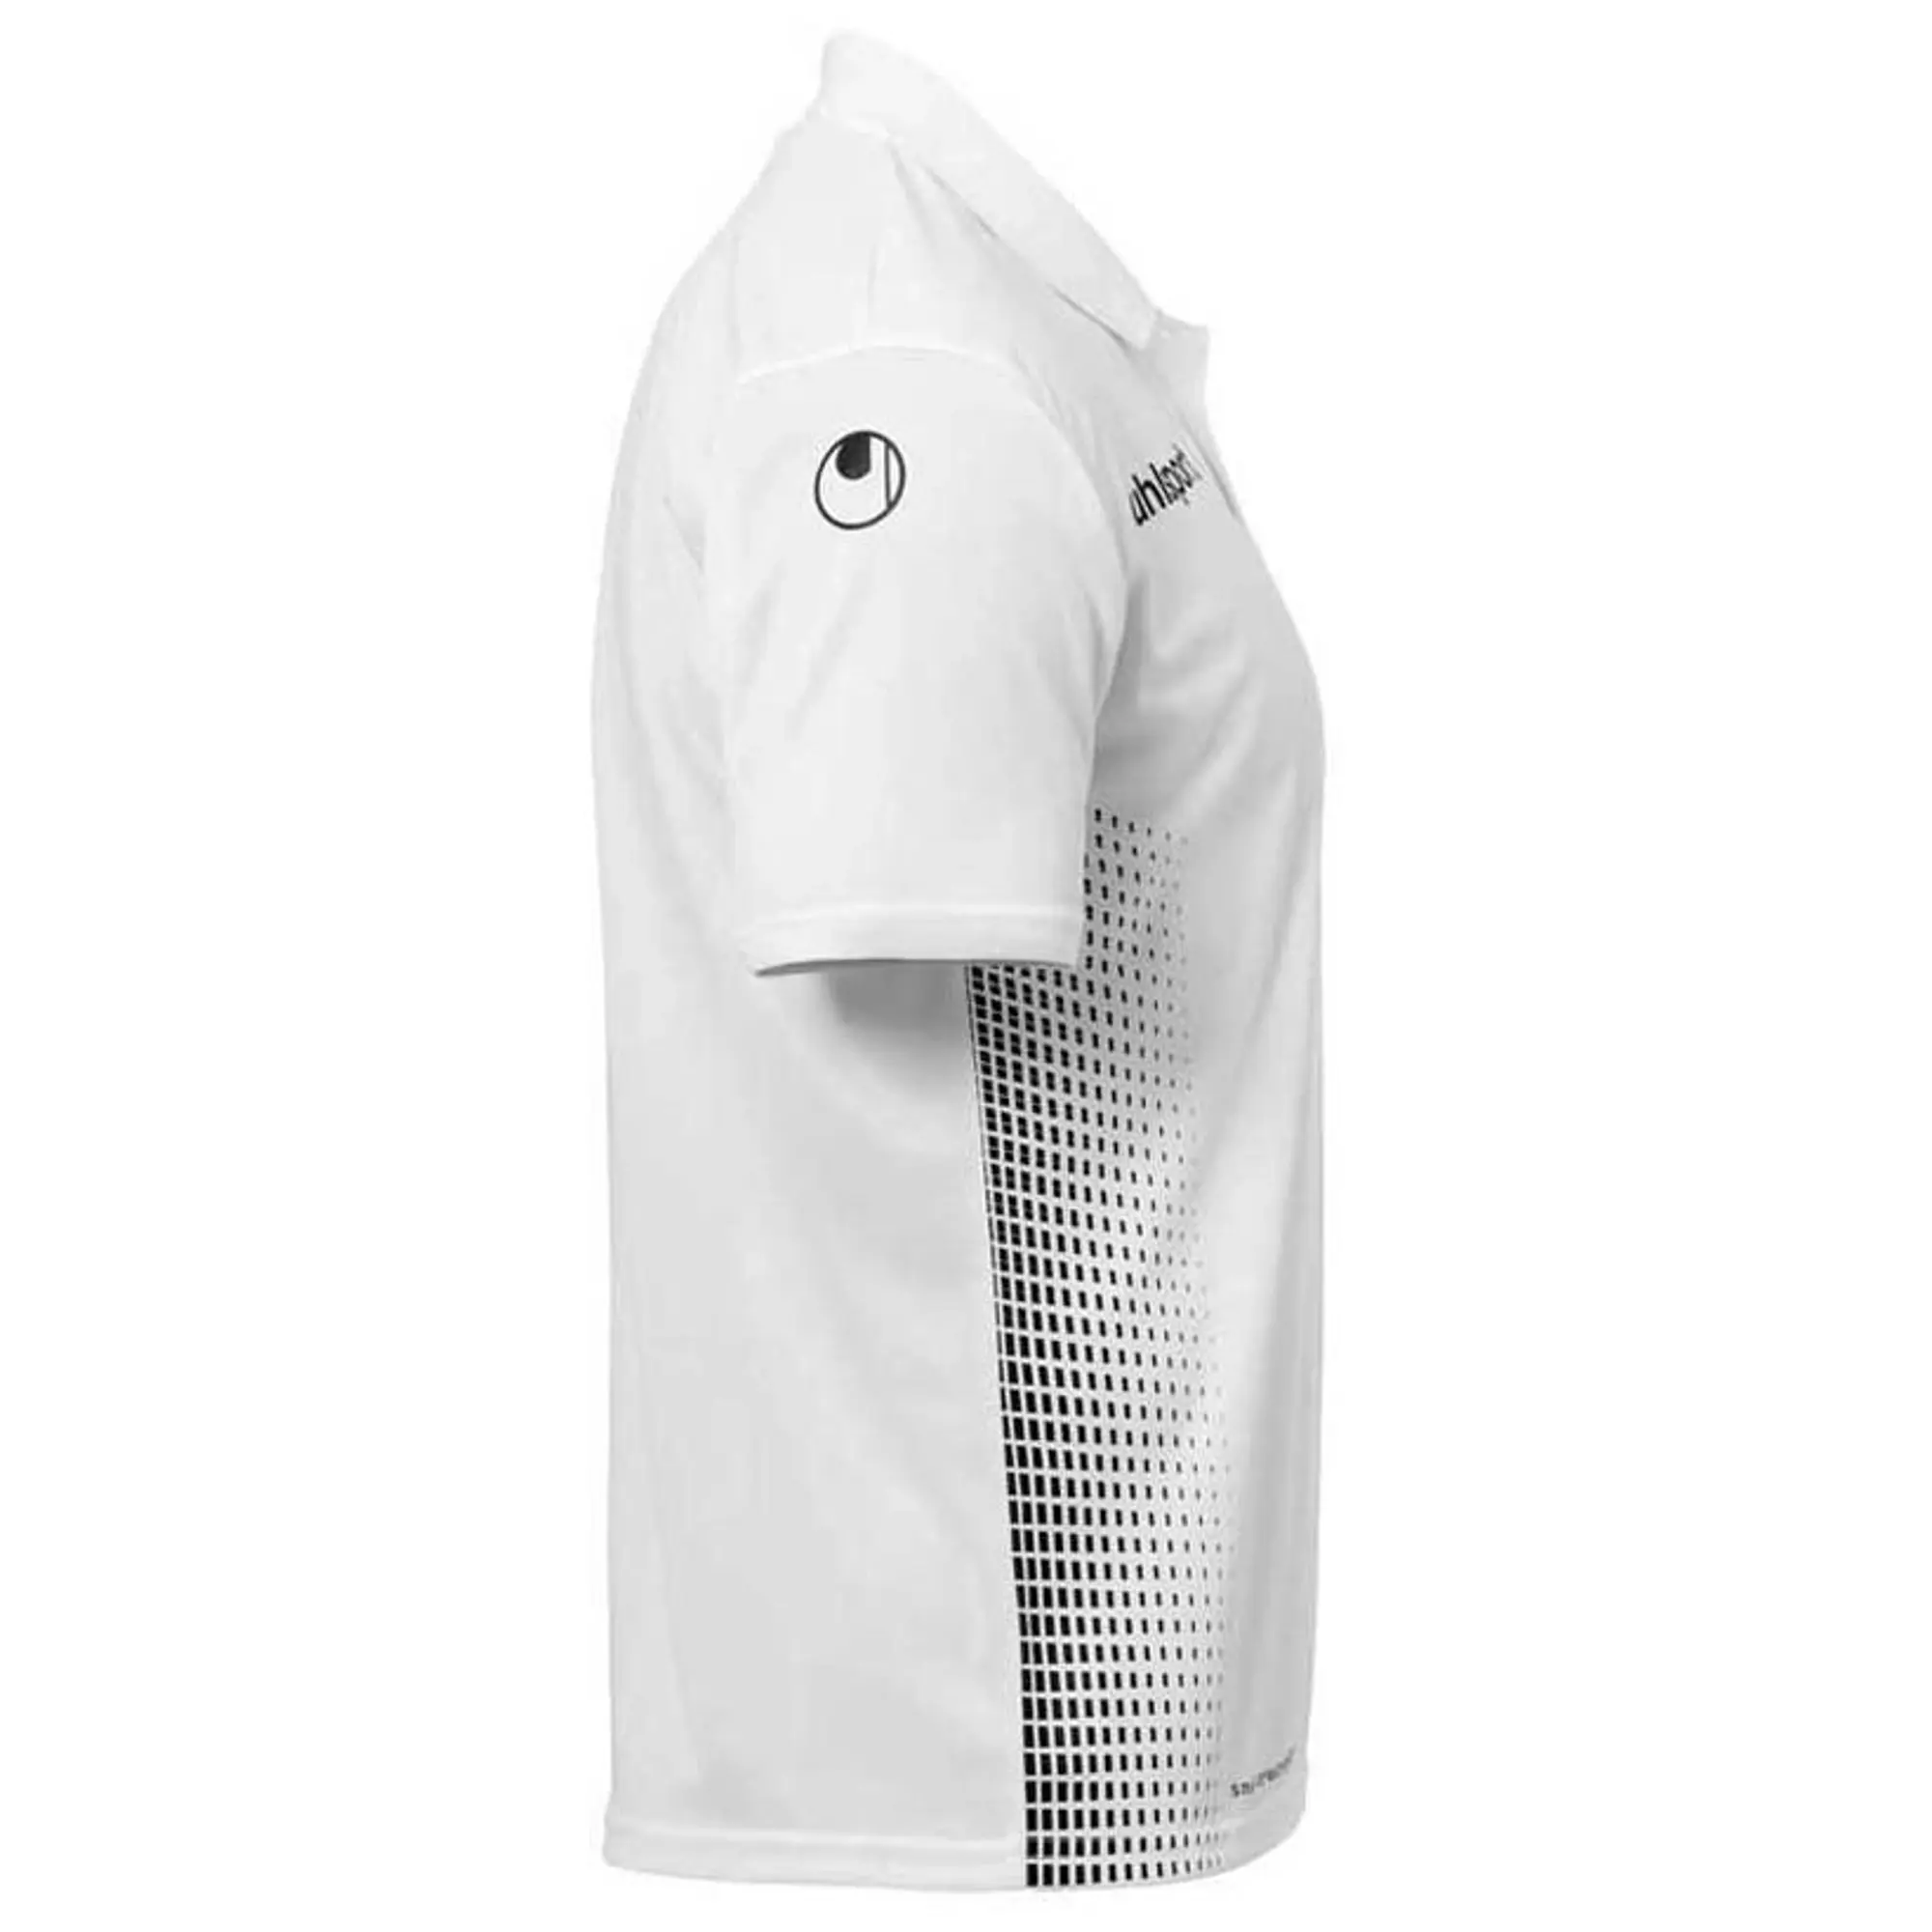 Uhlsport Score Short Sleeve Polo Shirt  - White